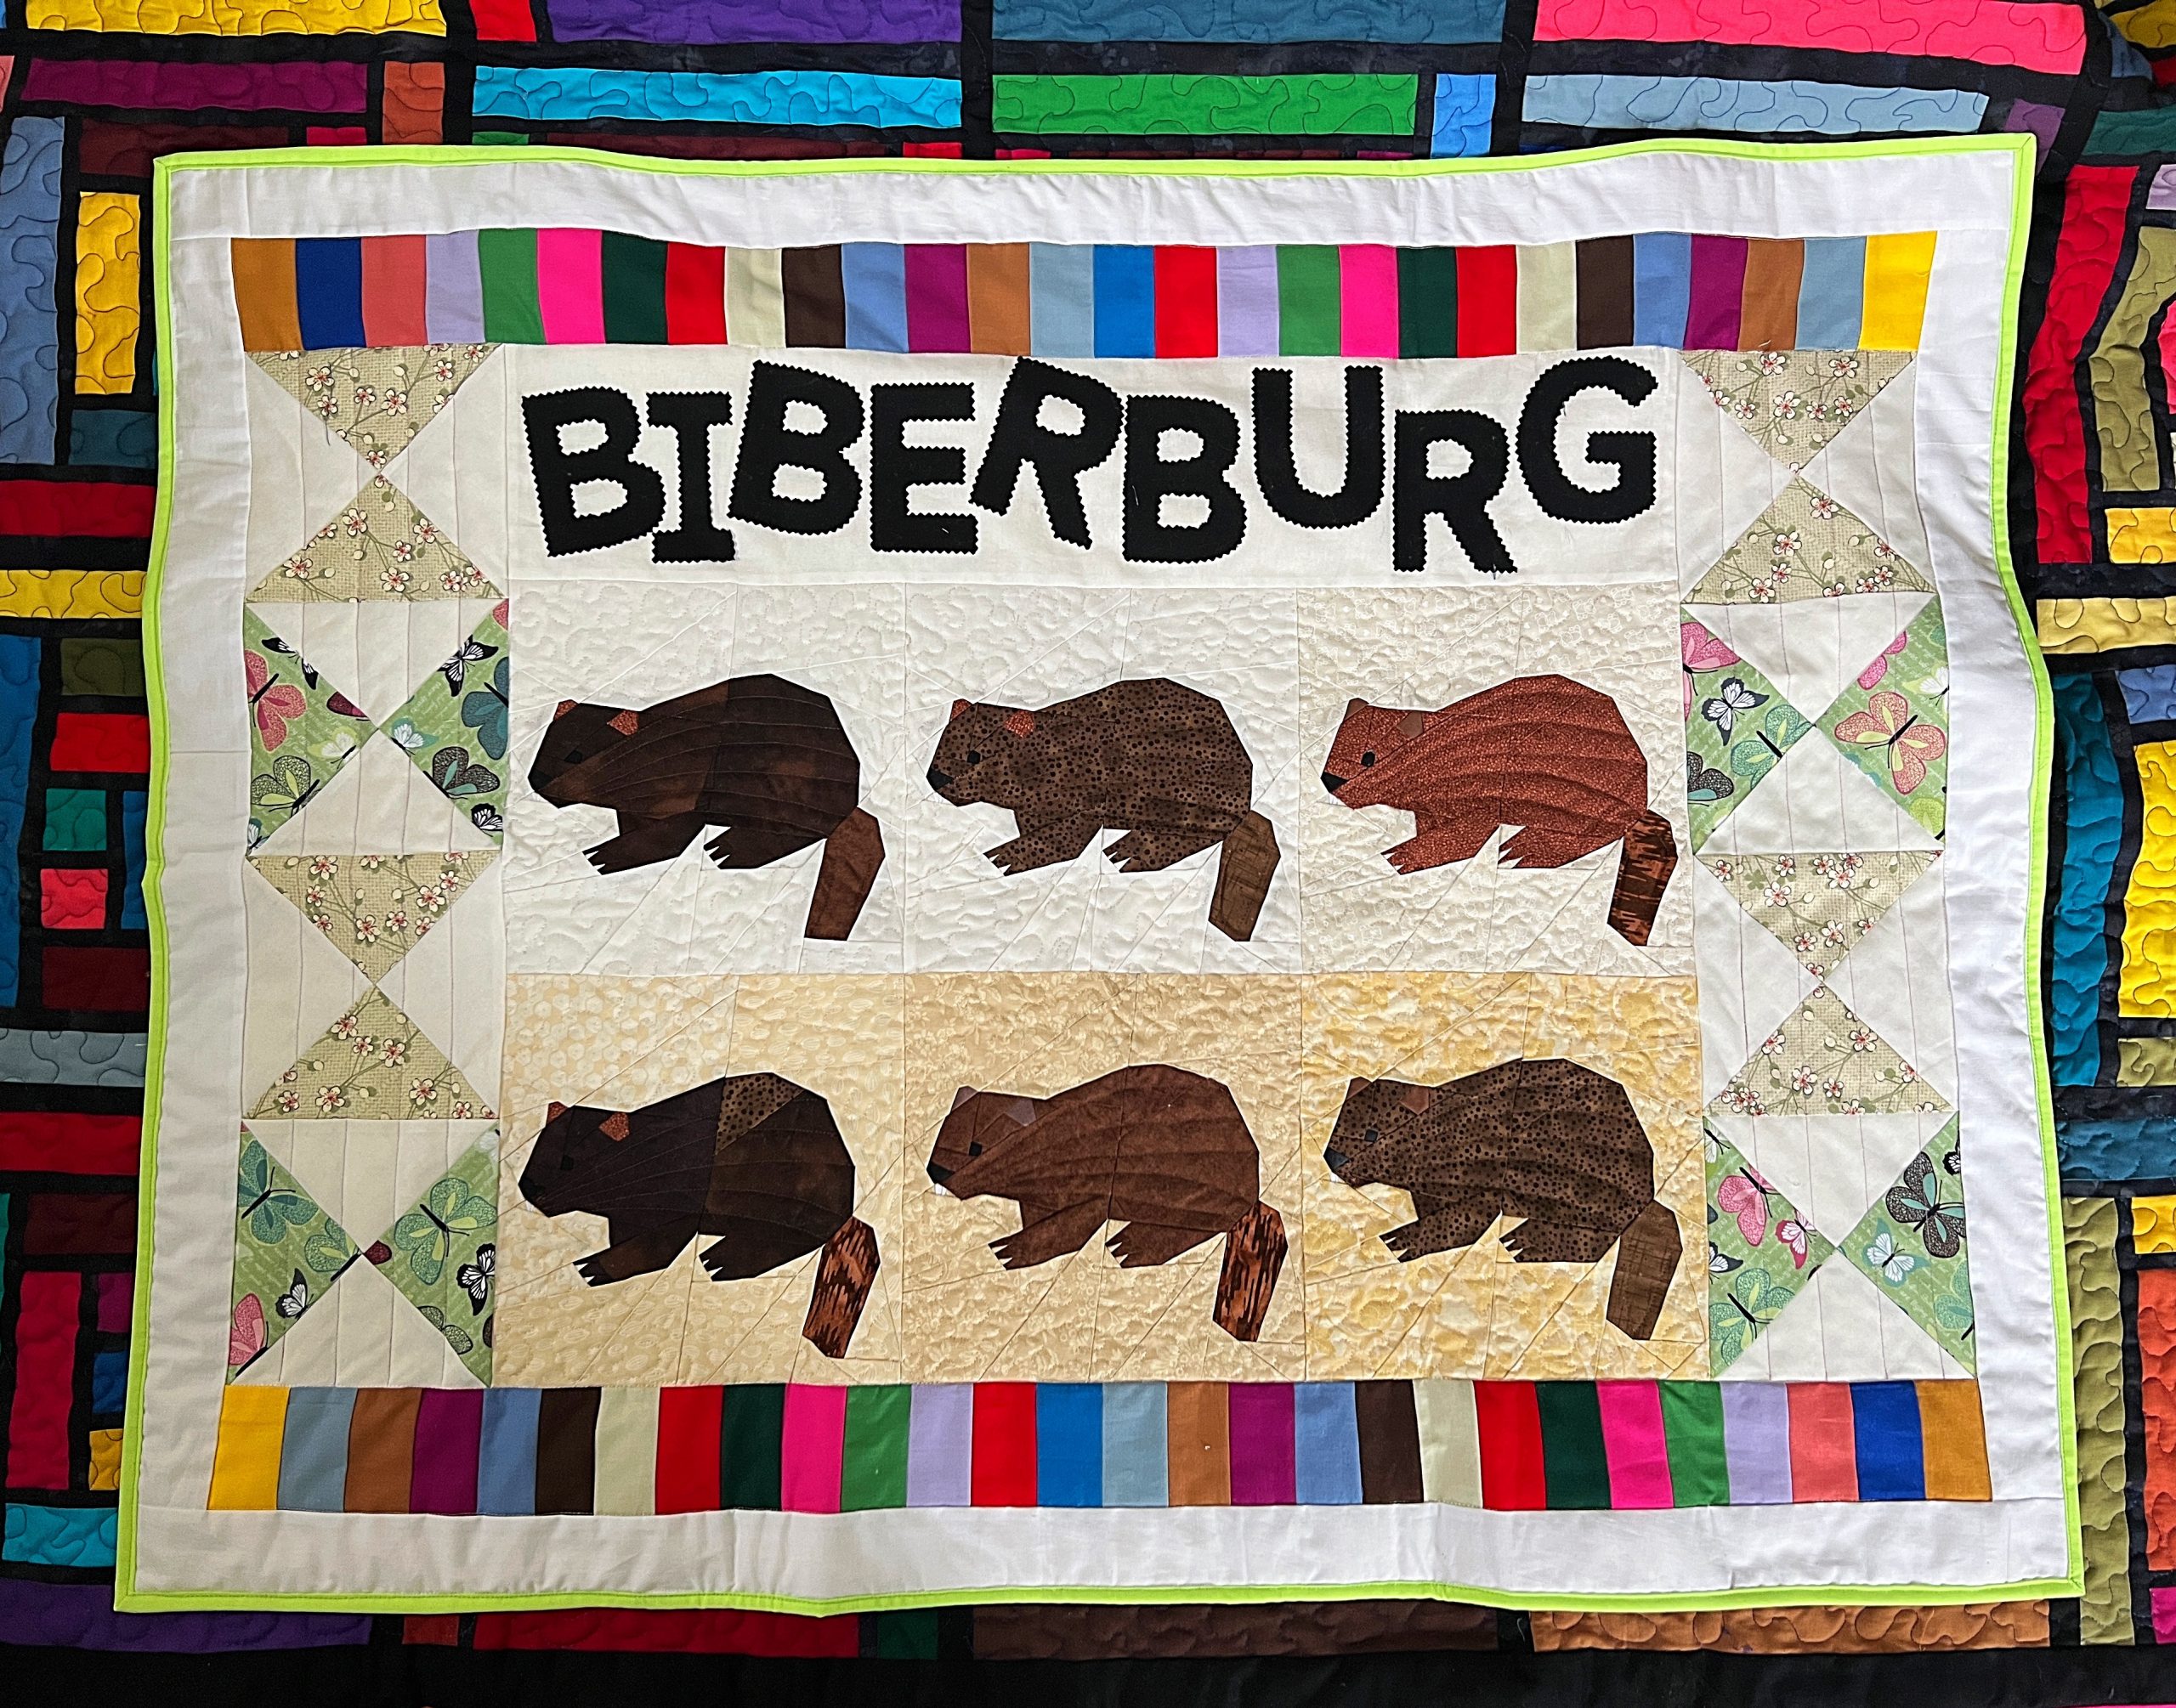 And the winner is:  “Biberburg”